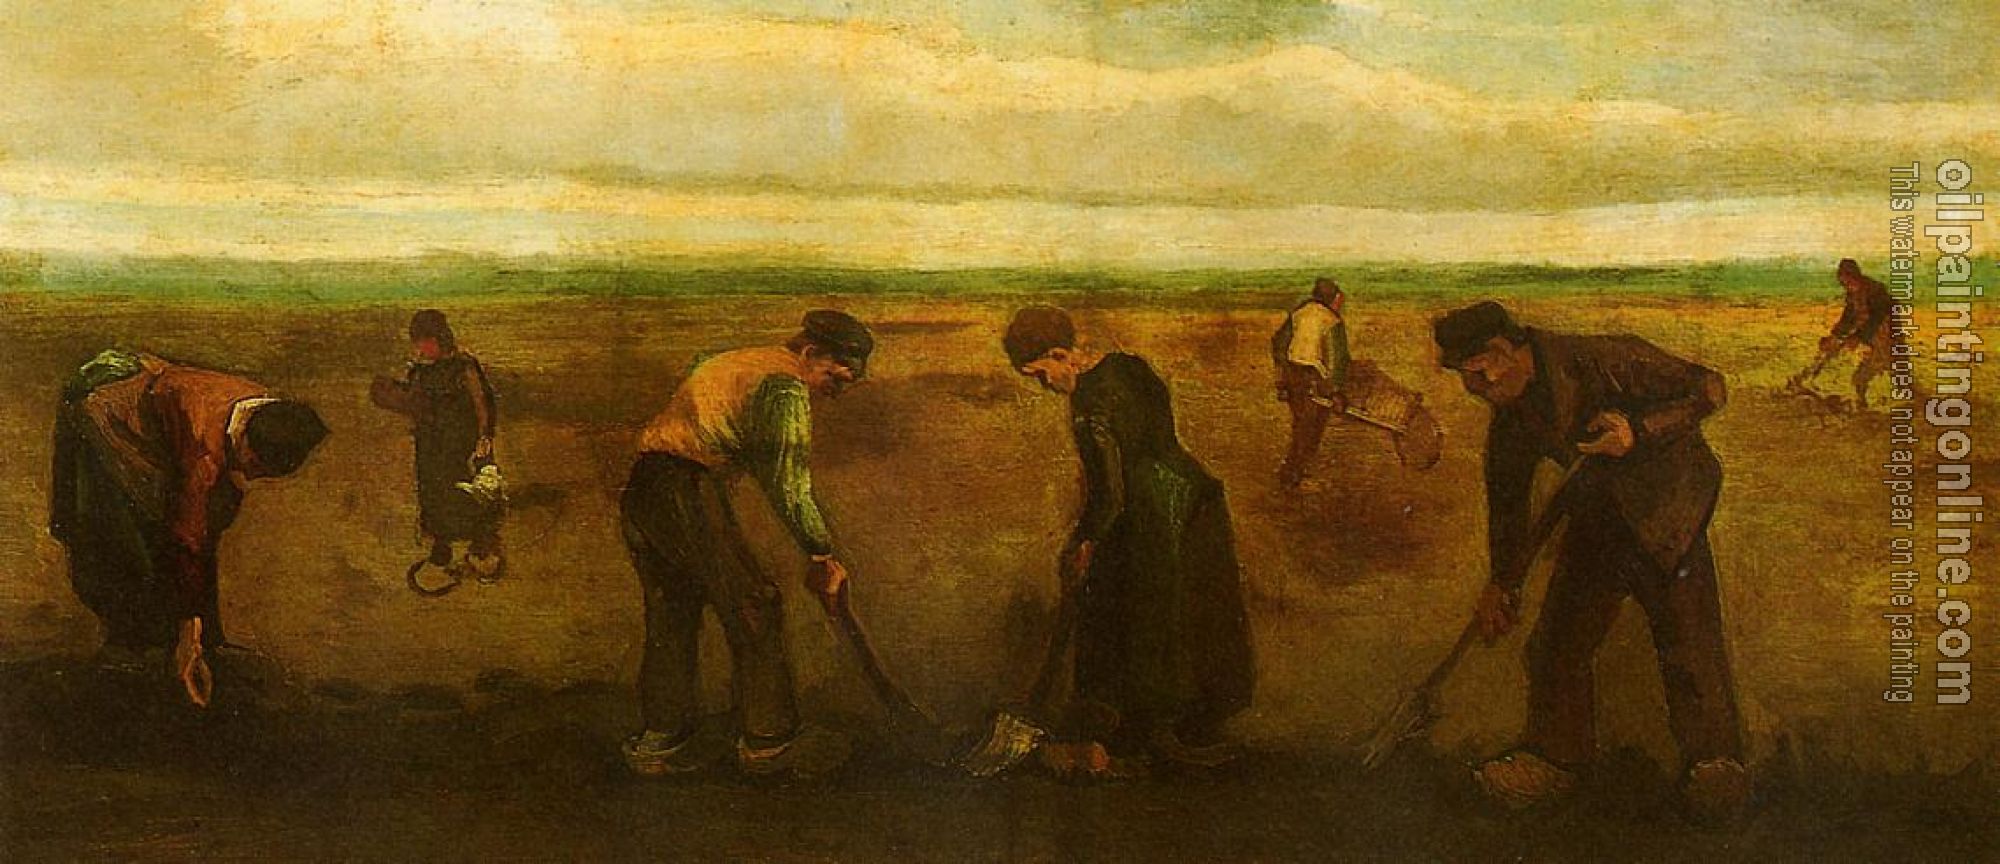 Gogh, Vincent van - Farmers Planting Potatoes